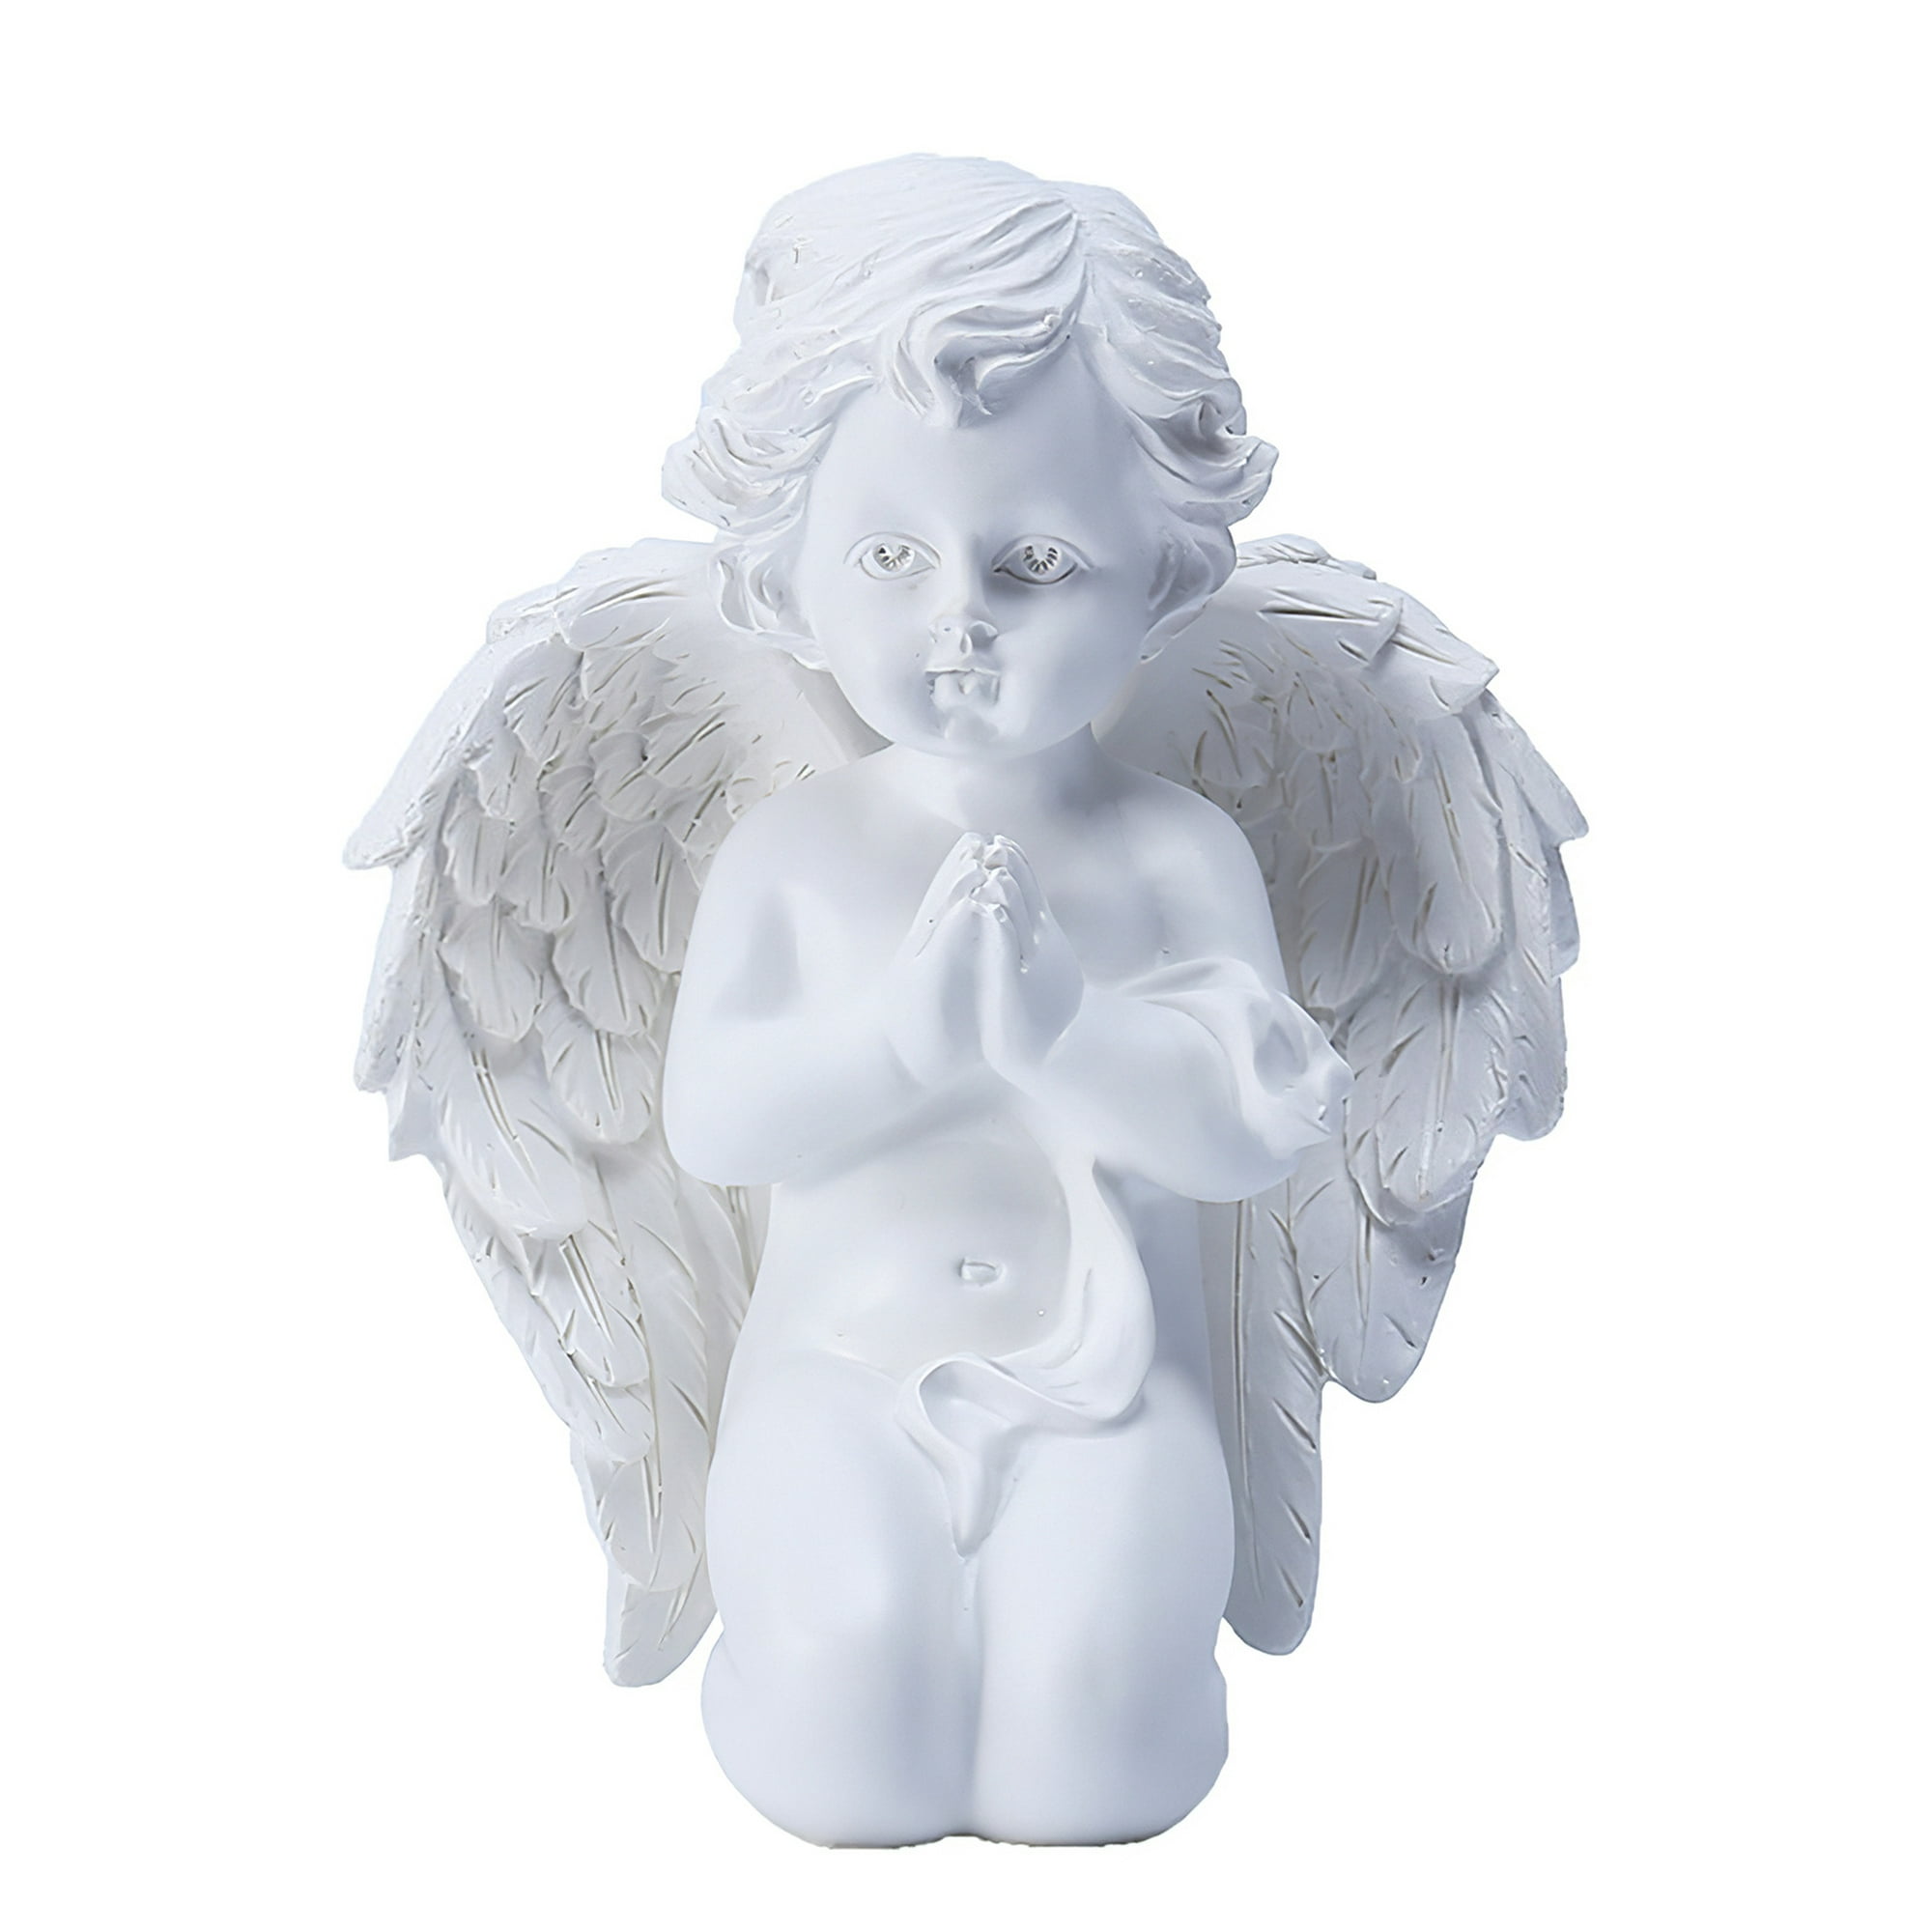 SEPARADOR PARA LIBROS – angelitos regalos y manualidades